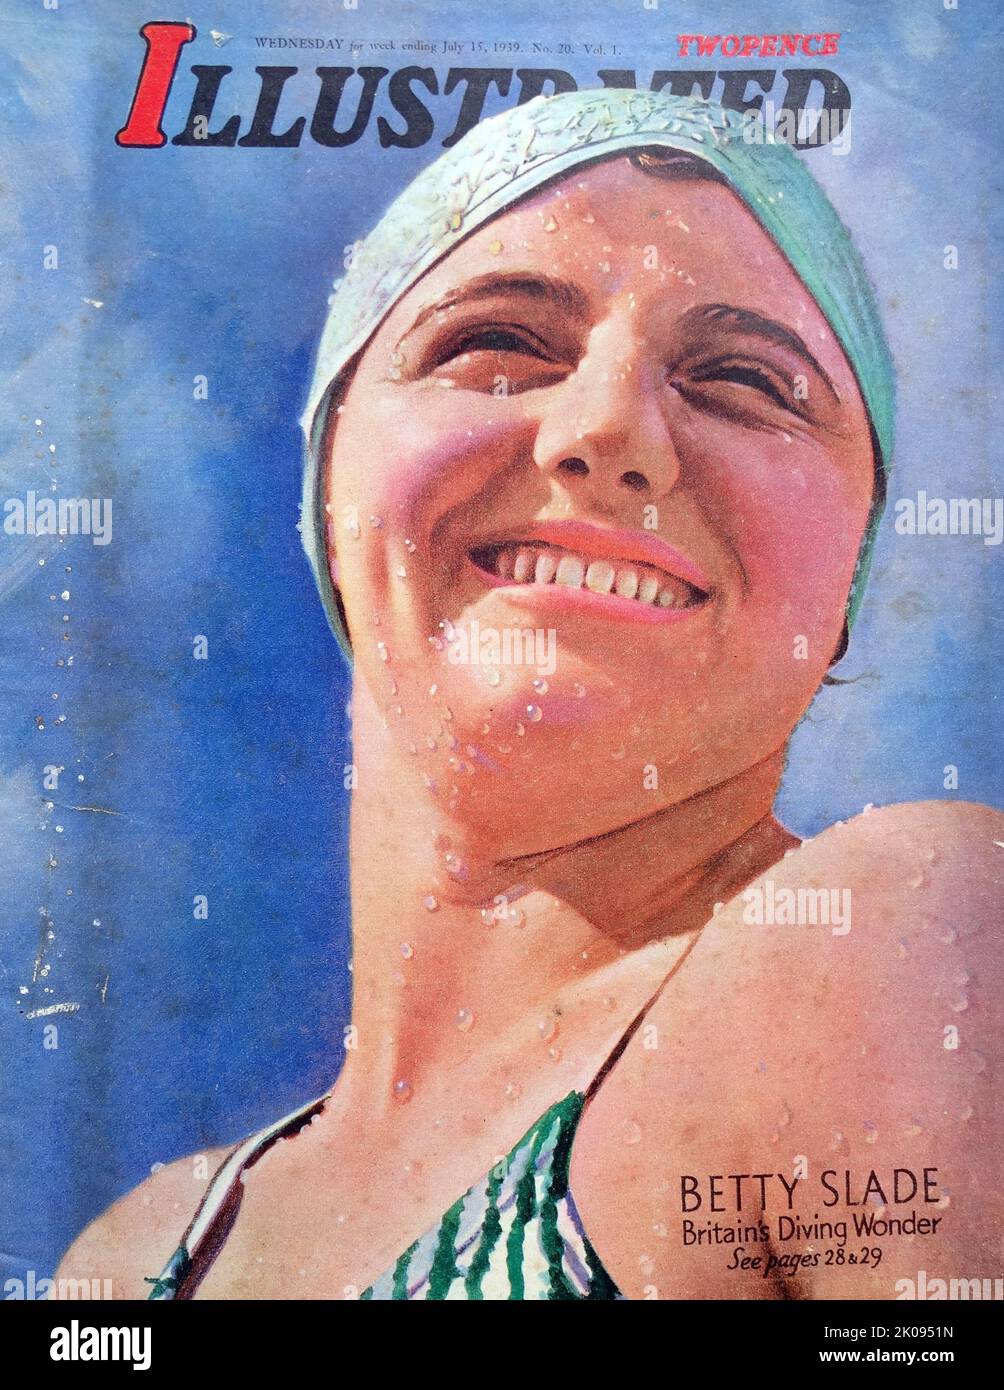 Betty Slide était un plongeur britannique. Elizabeth Joyce Slade (18 juin 1921 - 3 novembre 2000) a participé à l'épreuve féminine de tremplin de 3 mètres aux Jeux olympiques d'été de 1936. Elle a remporté une médaille d'or dans le même événement aux Championnats d'Europe de l'AQUEtisme 1938. Capot avant de l'illustration. Banque D'Images